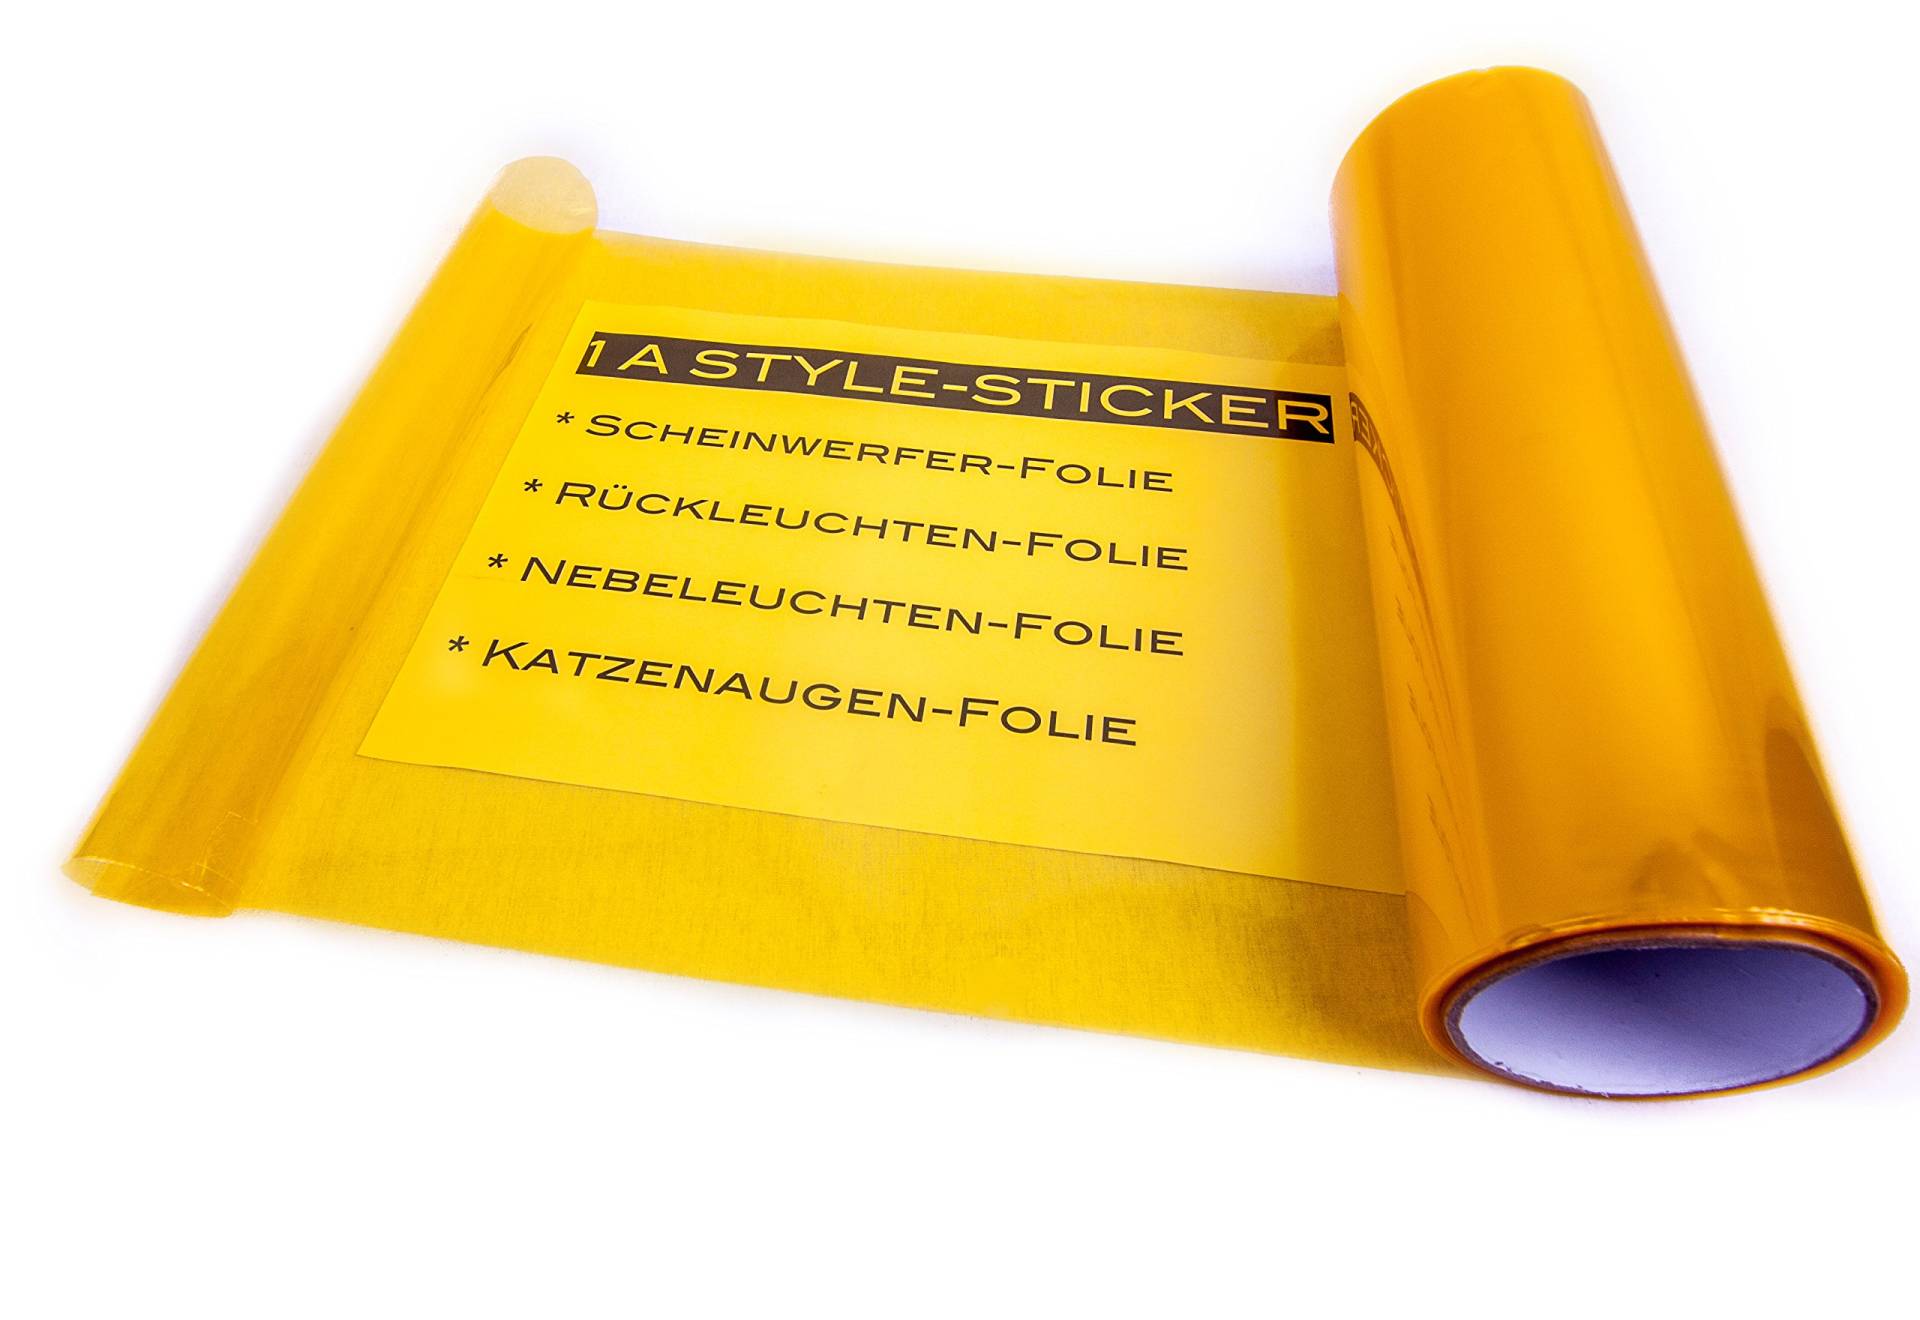 Scheinwerferfolie GELB 100cm x 30cm Gelbe NEBLER Folie NEW Folie Scheinwerfer yellow vinyl google von 1A Style Sticker